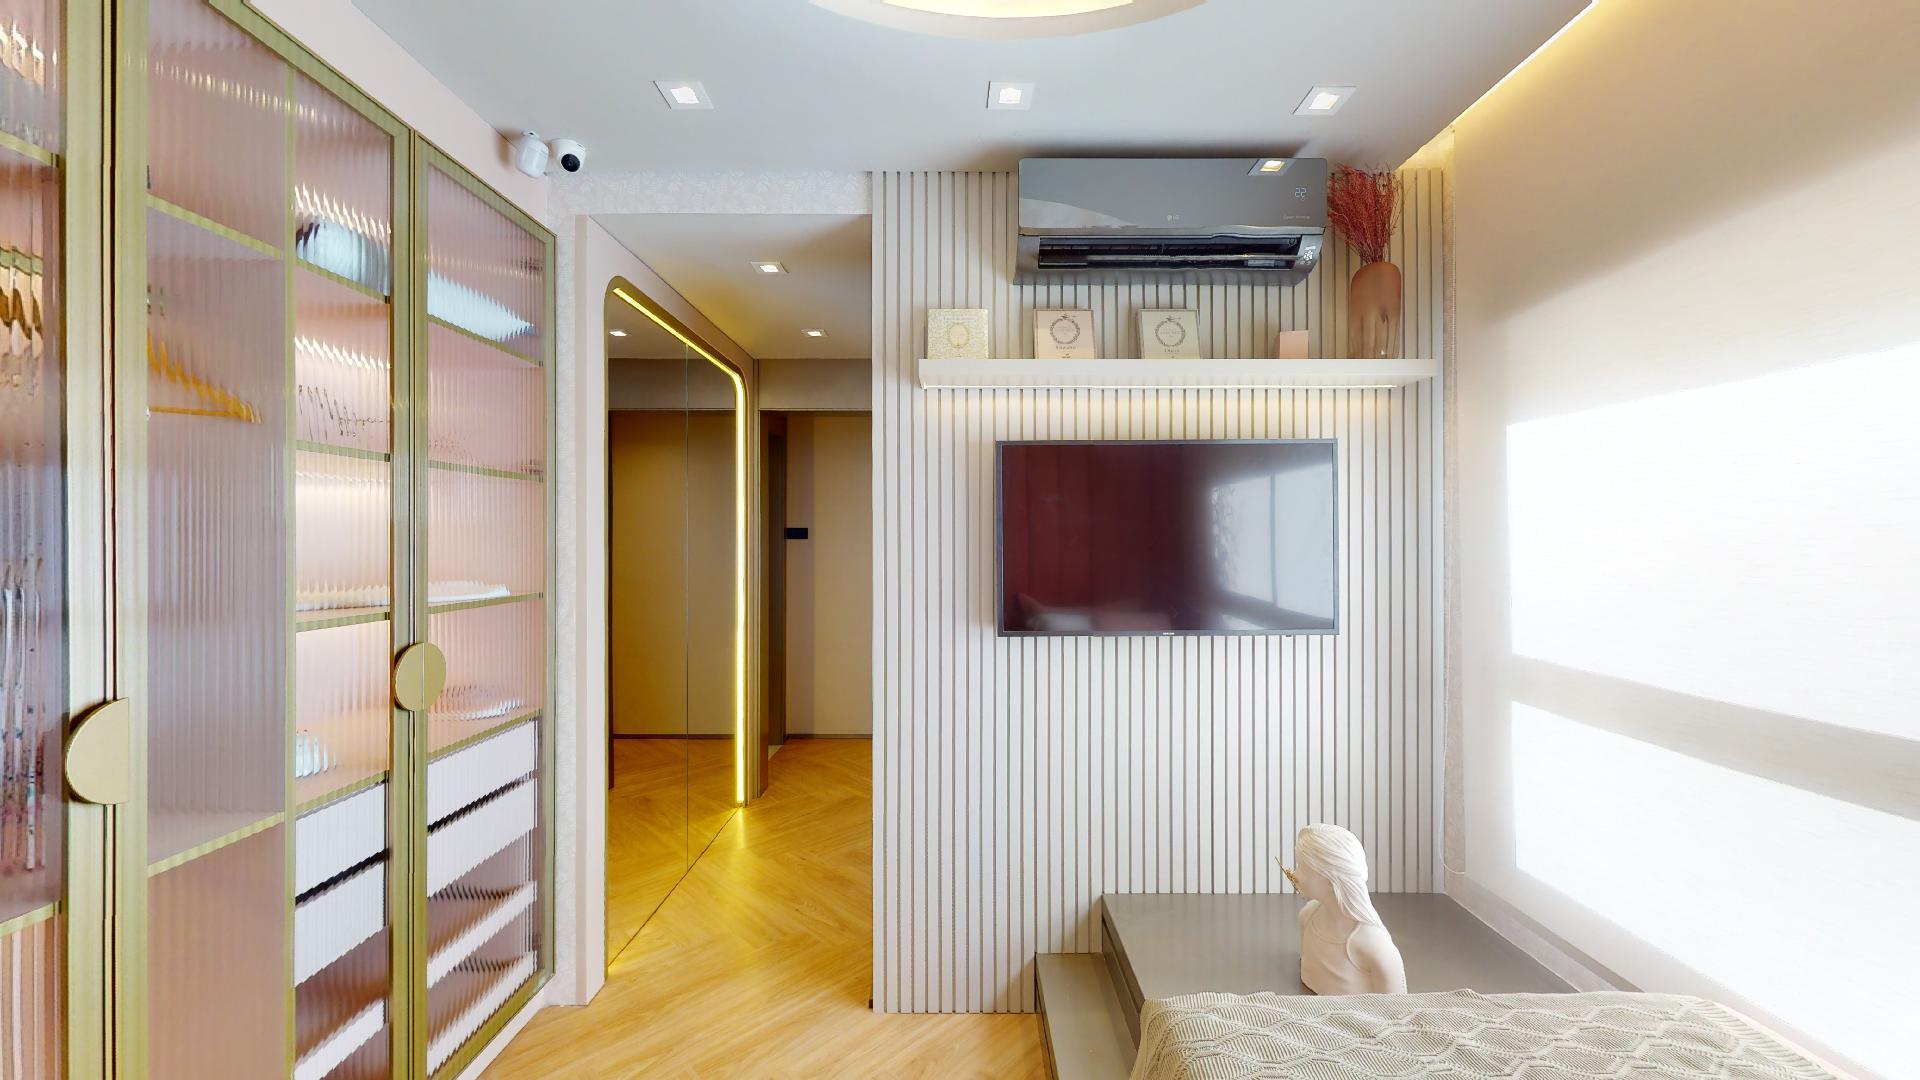 Foto do Dormitório Infantil do Decorado de 170 m²